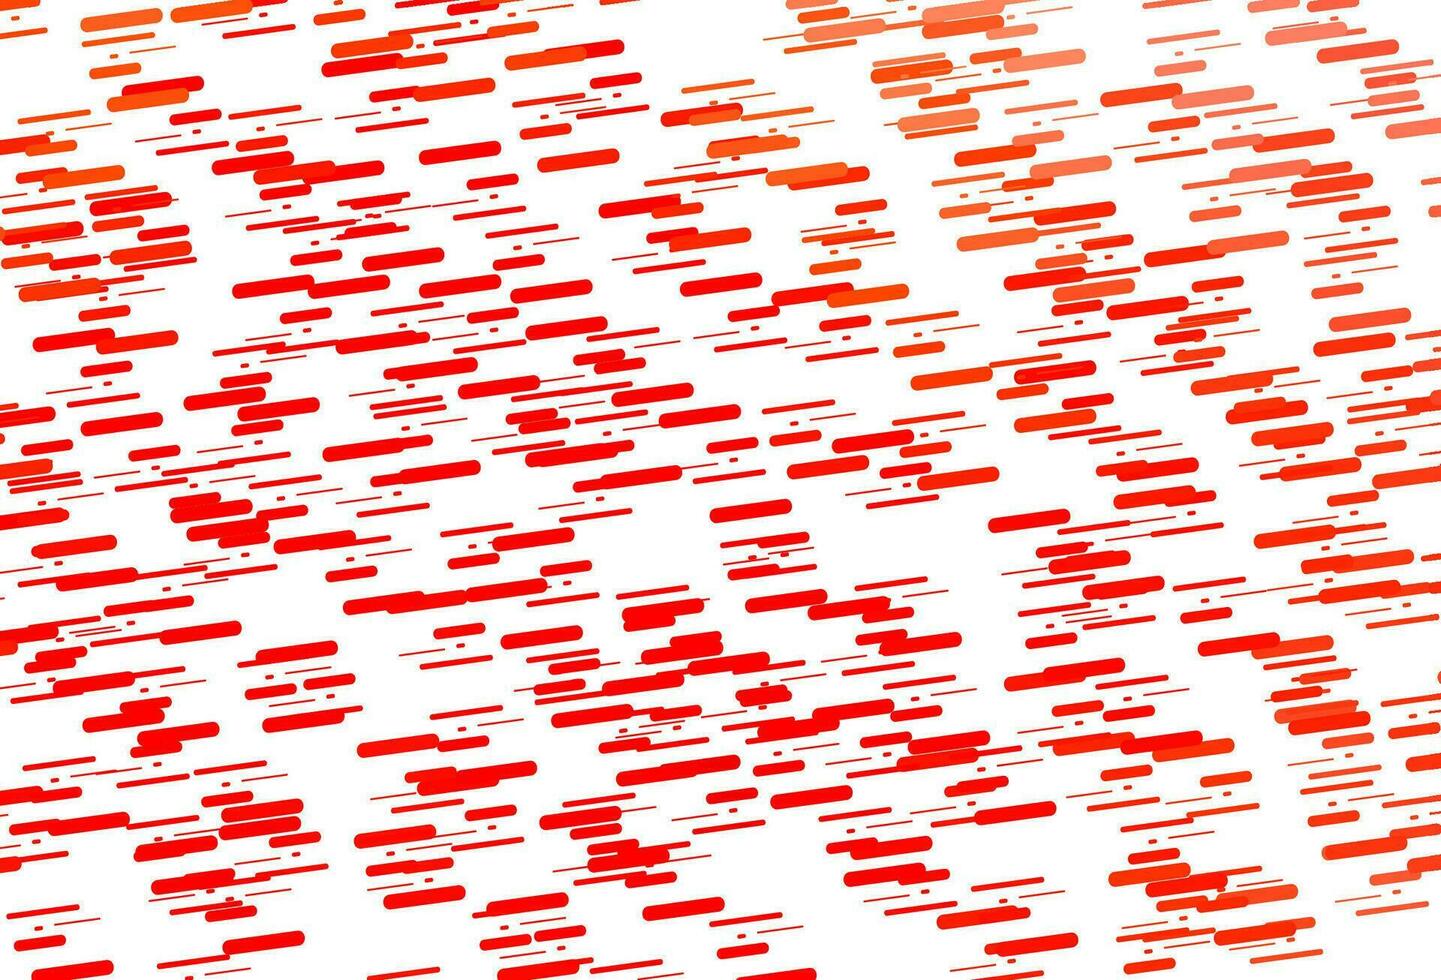 sfondo vettoriale rosso chiaro con lunghe linee.